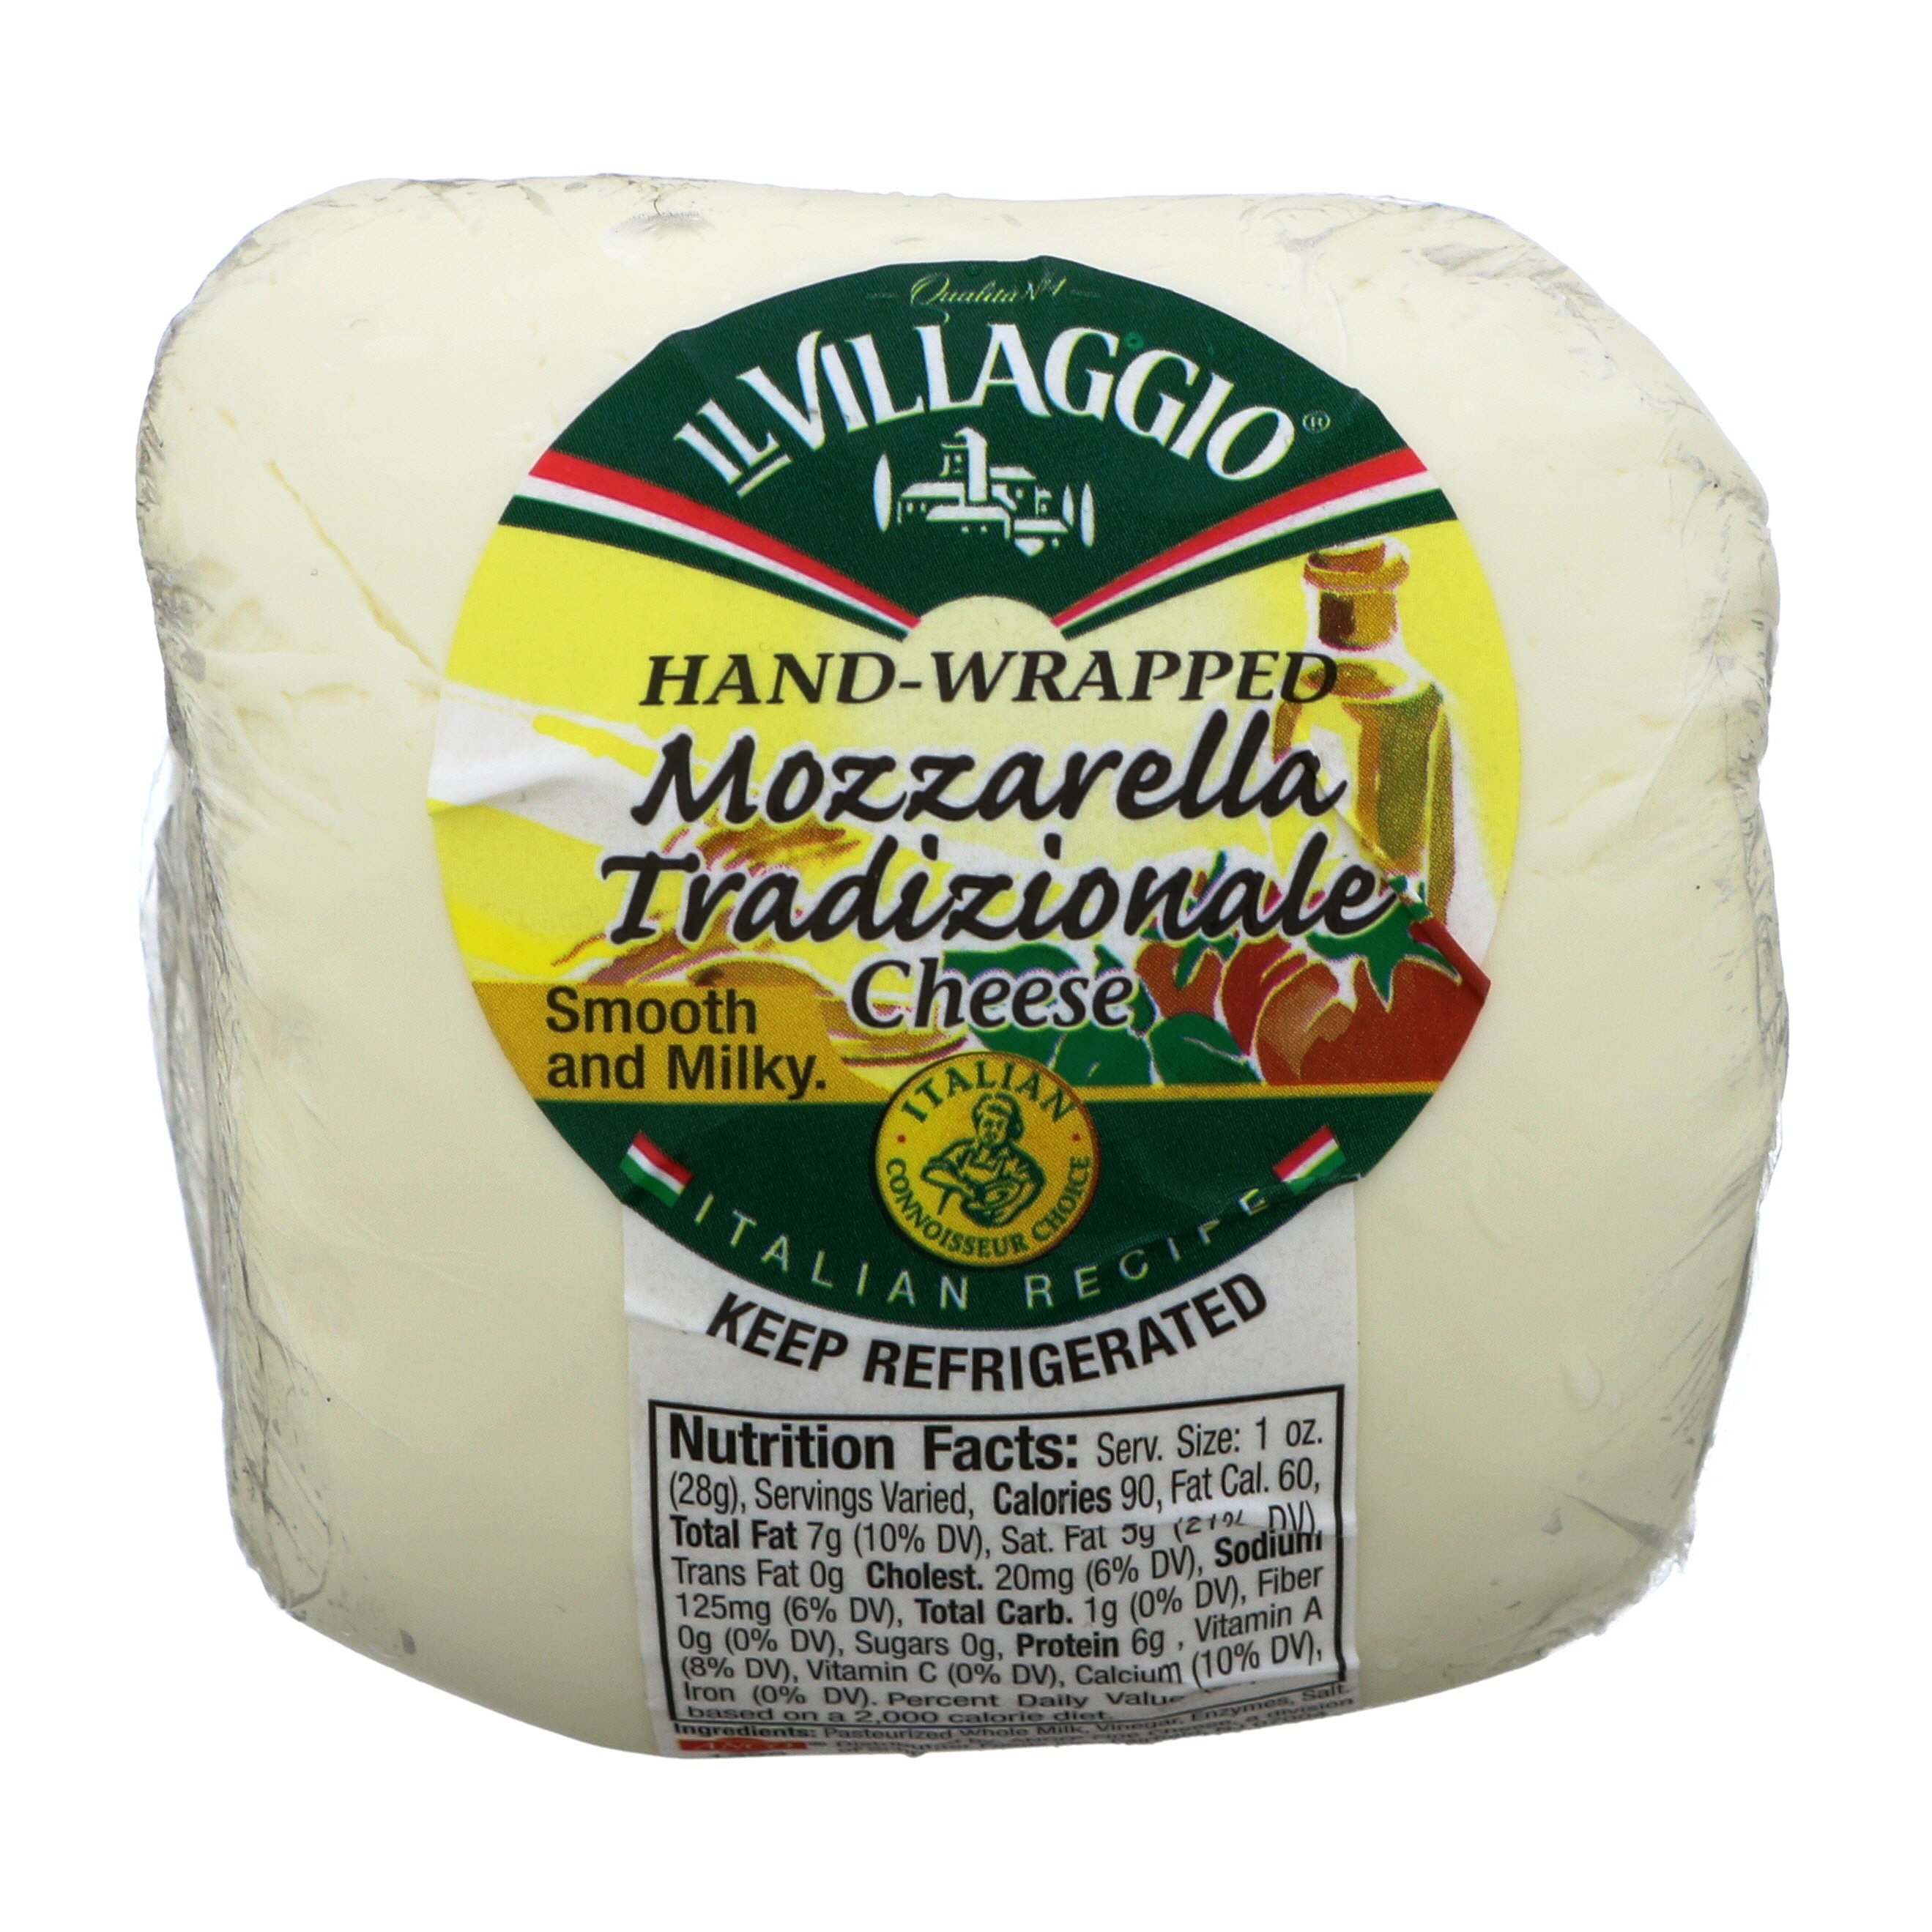 IL Villaggio Hand Wrapped Mozzarella - Shop Cheese at H-E-B